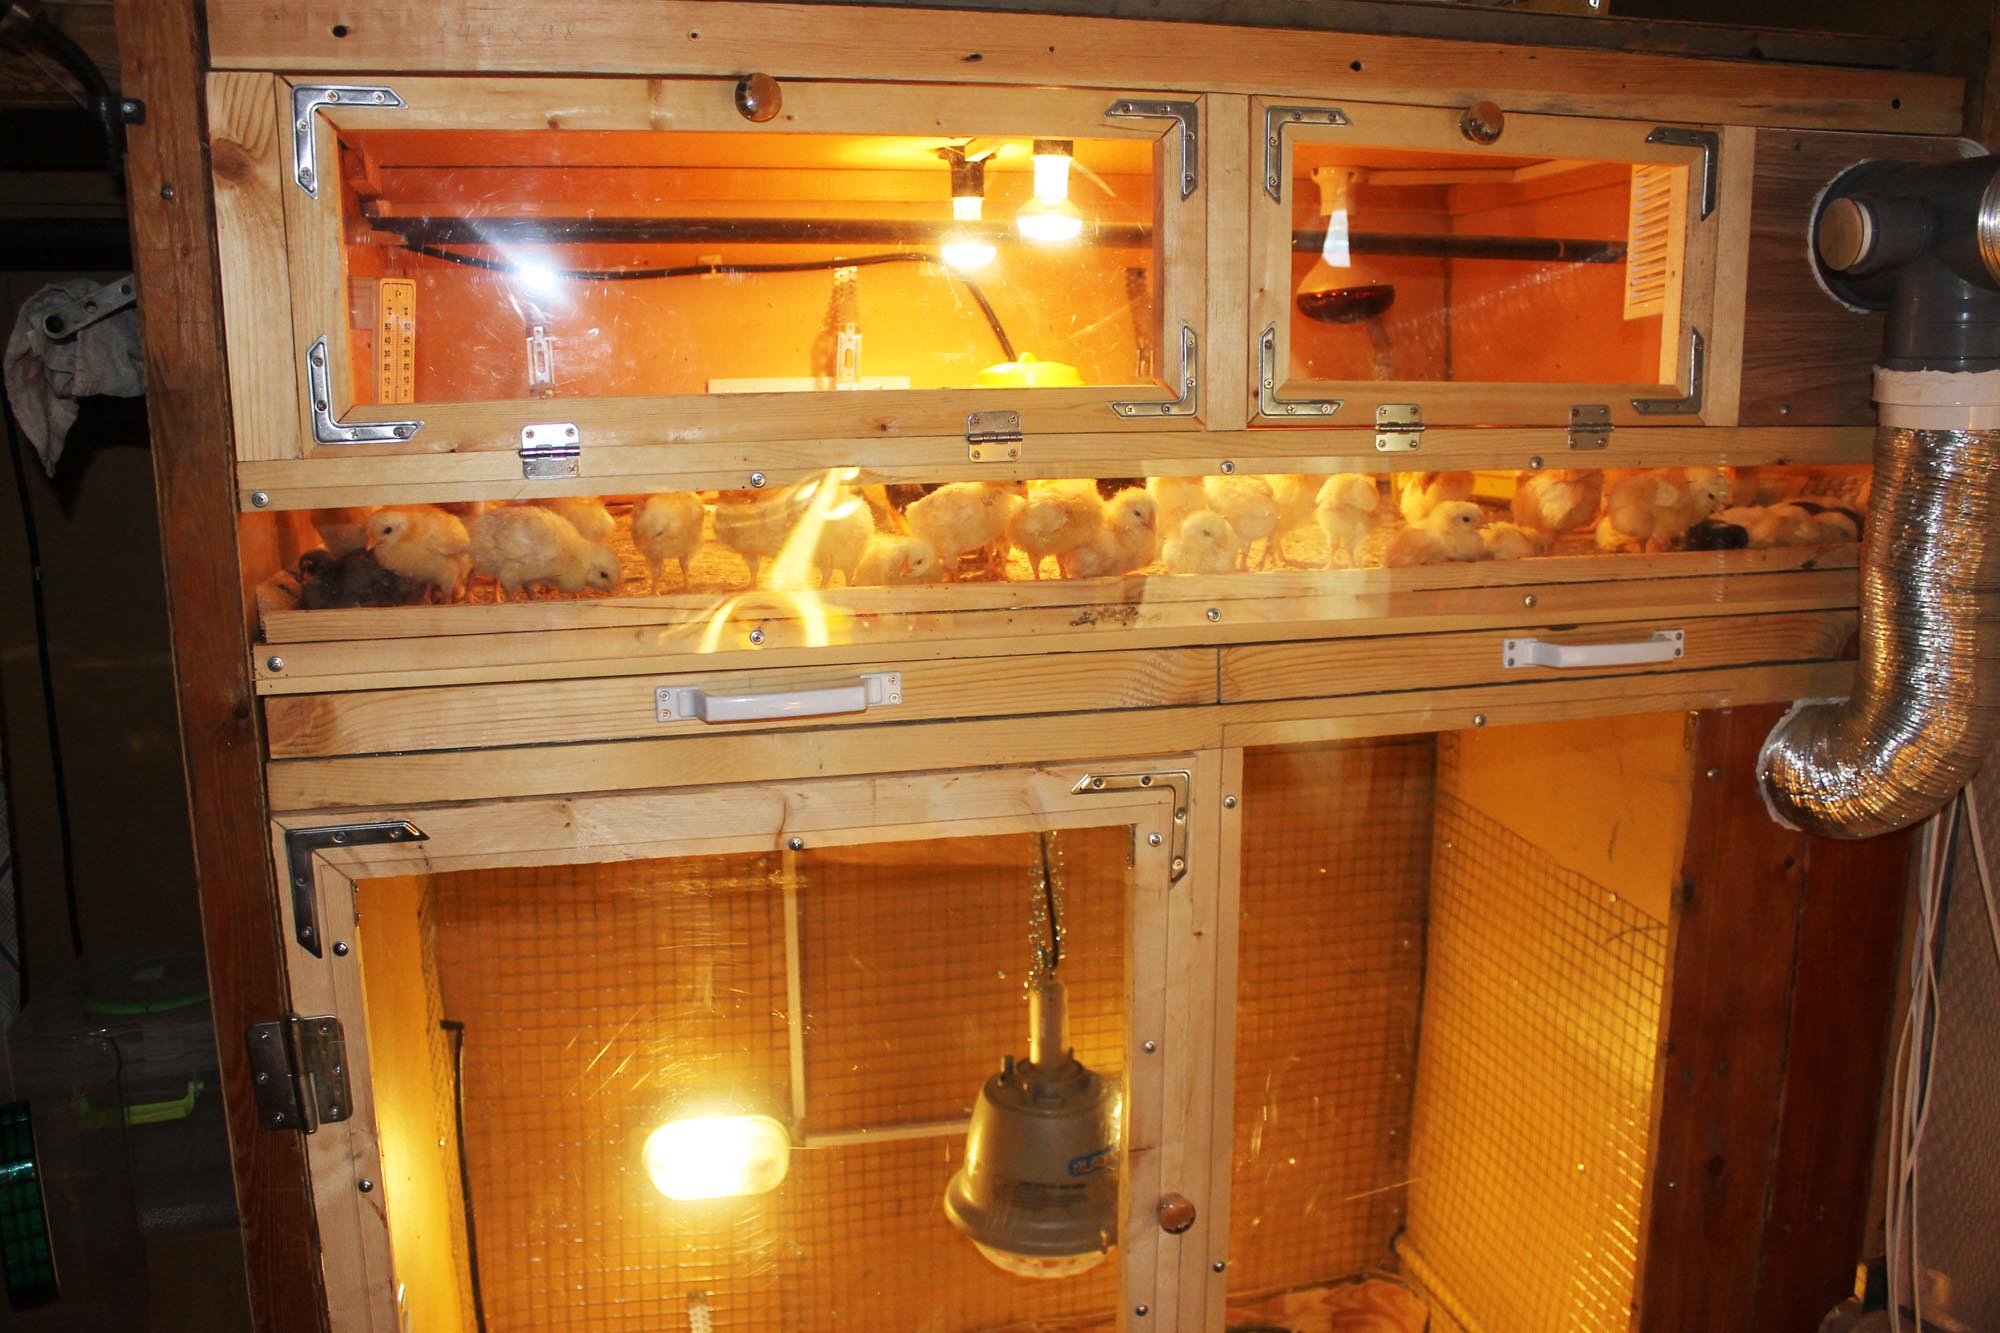 Сколько держать цыплят под лампой